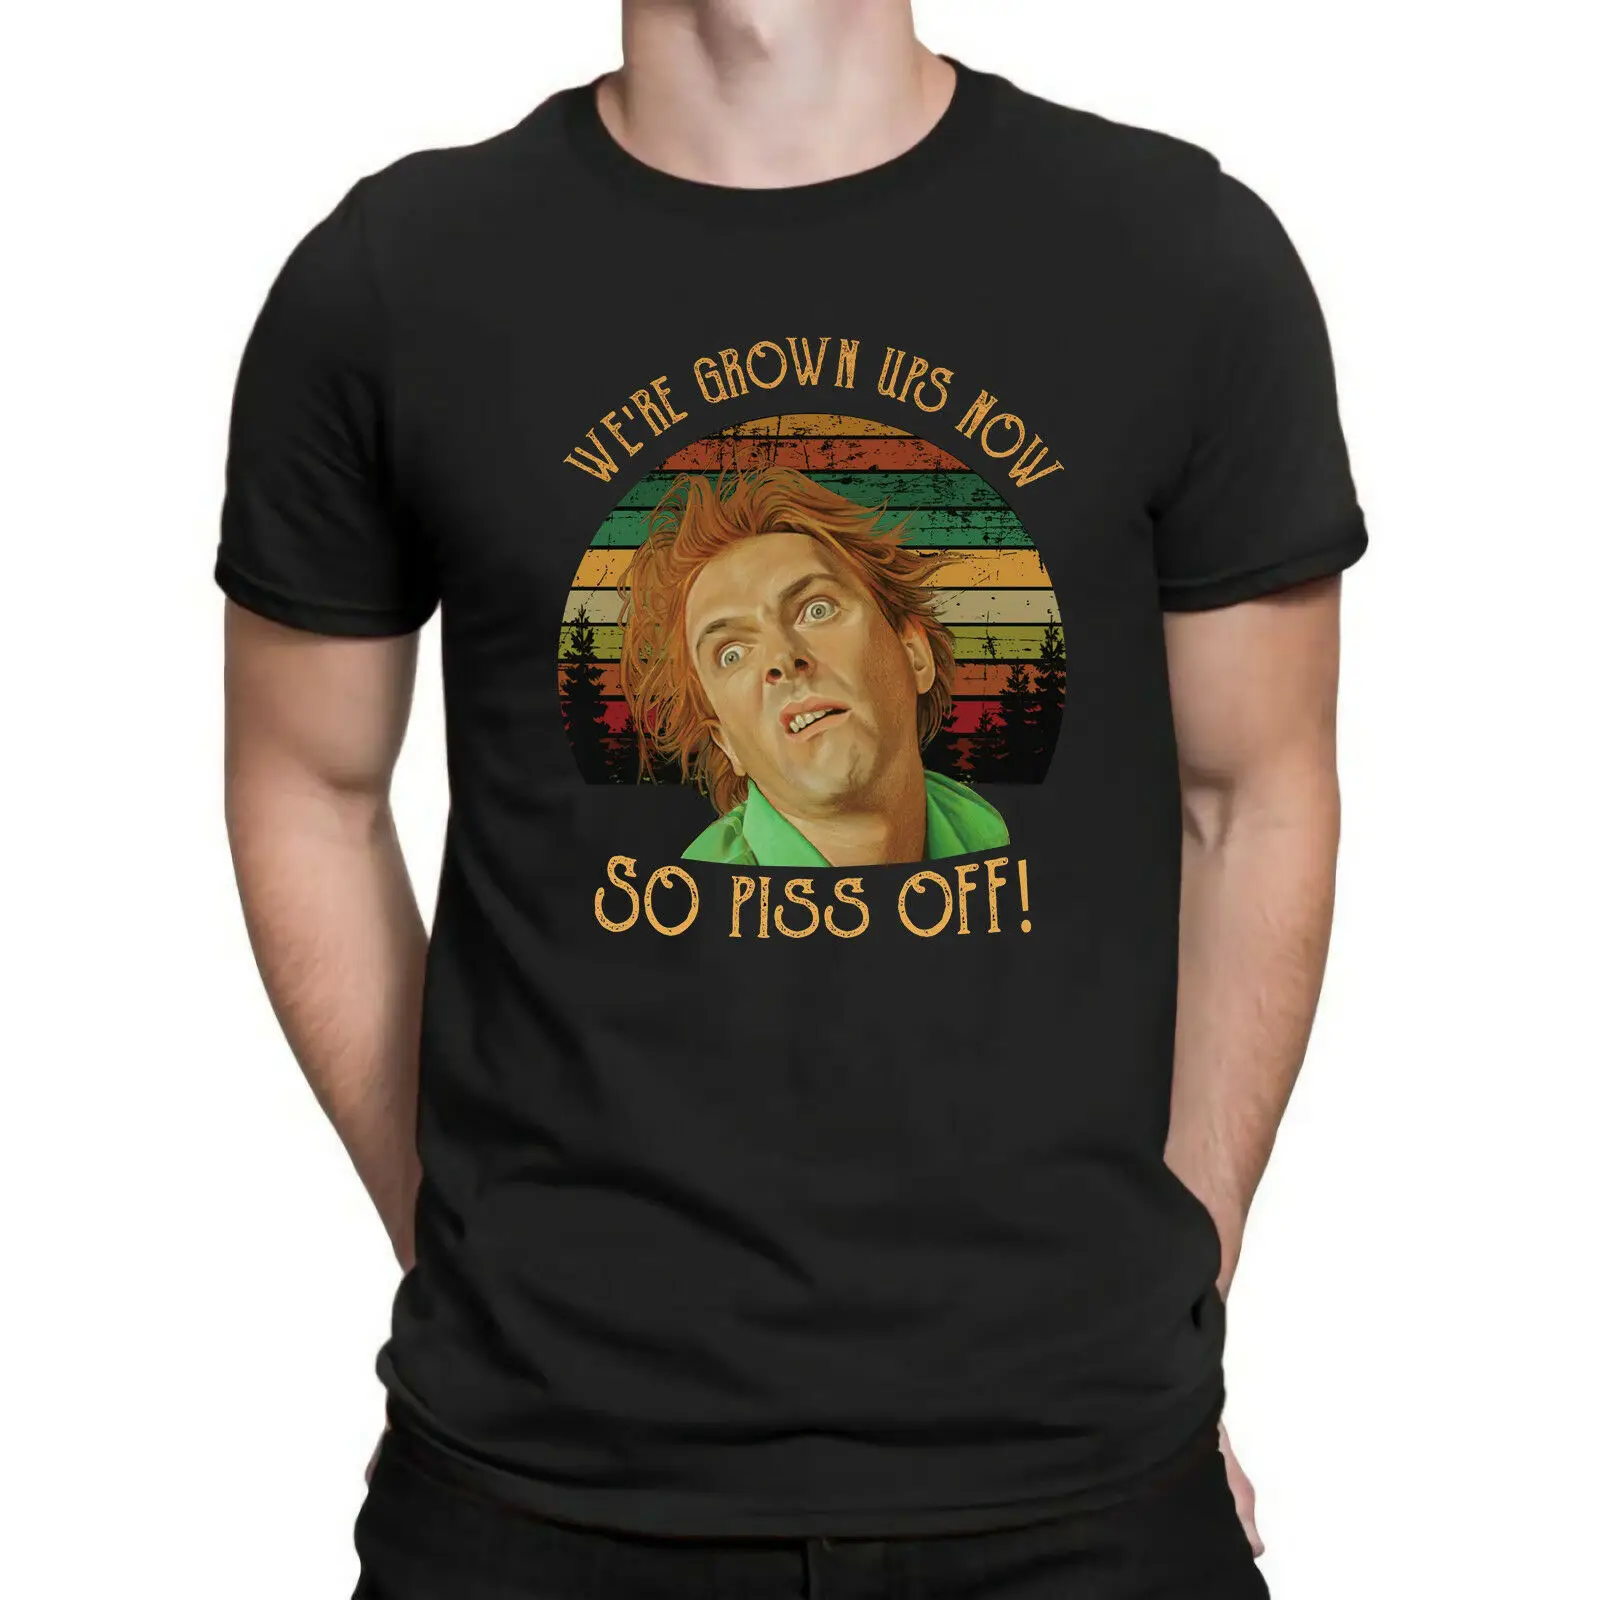 

Мужская винтажная смешная комедия футболка унисекс с изображением заката из сериала «мы взрослые сейчас так раздражаем»